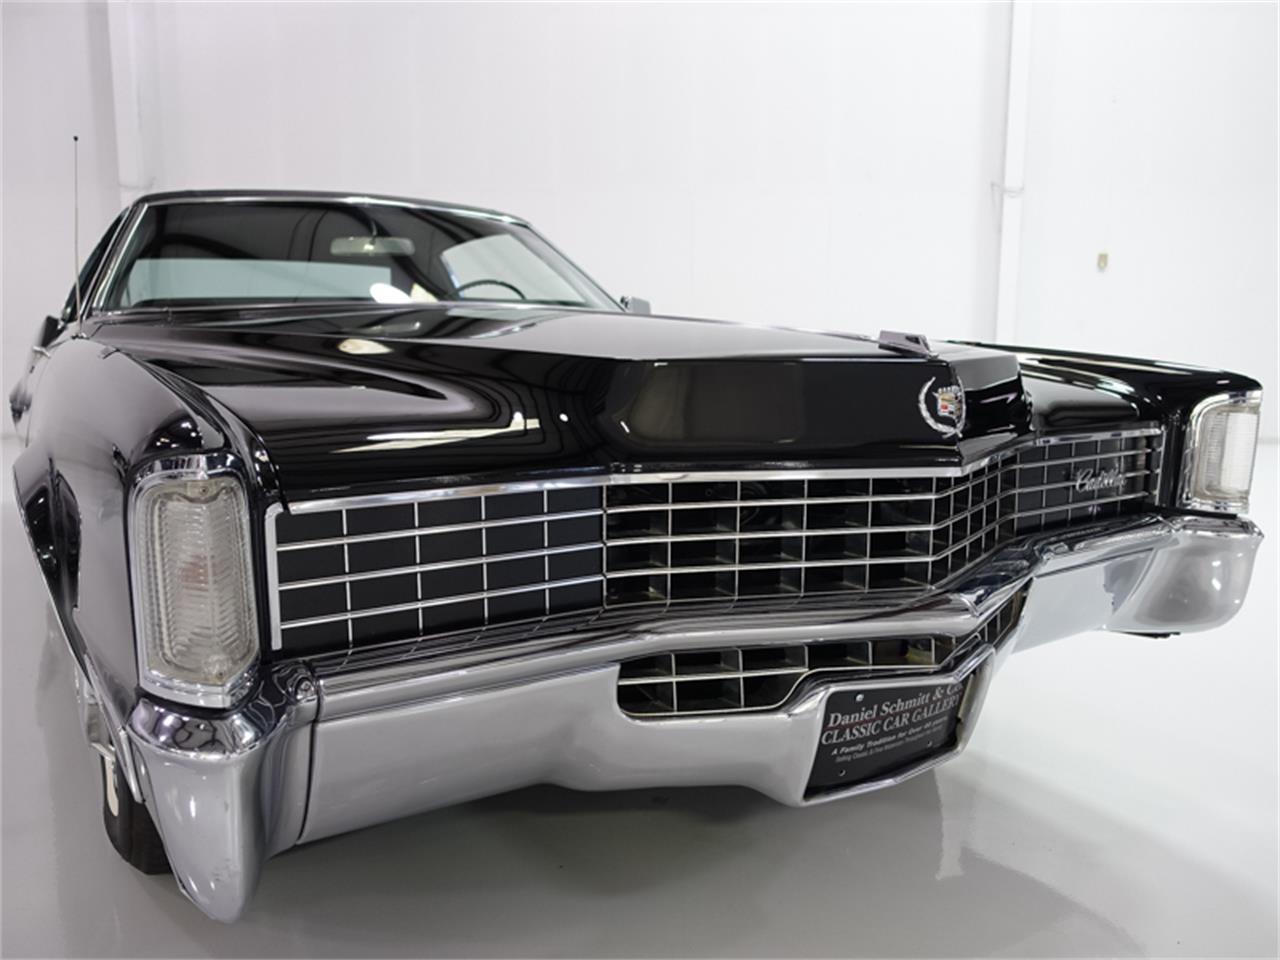 Cadillac fleetwood eldorado. Cadillac Eldorado Fleetwood 1968. Cadillac 1968 Eldorado. Cadillac Eldorado Coupe 1968. Cadillac Eldorado 67.